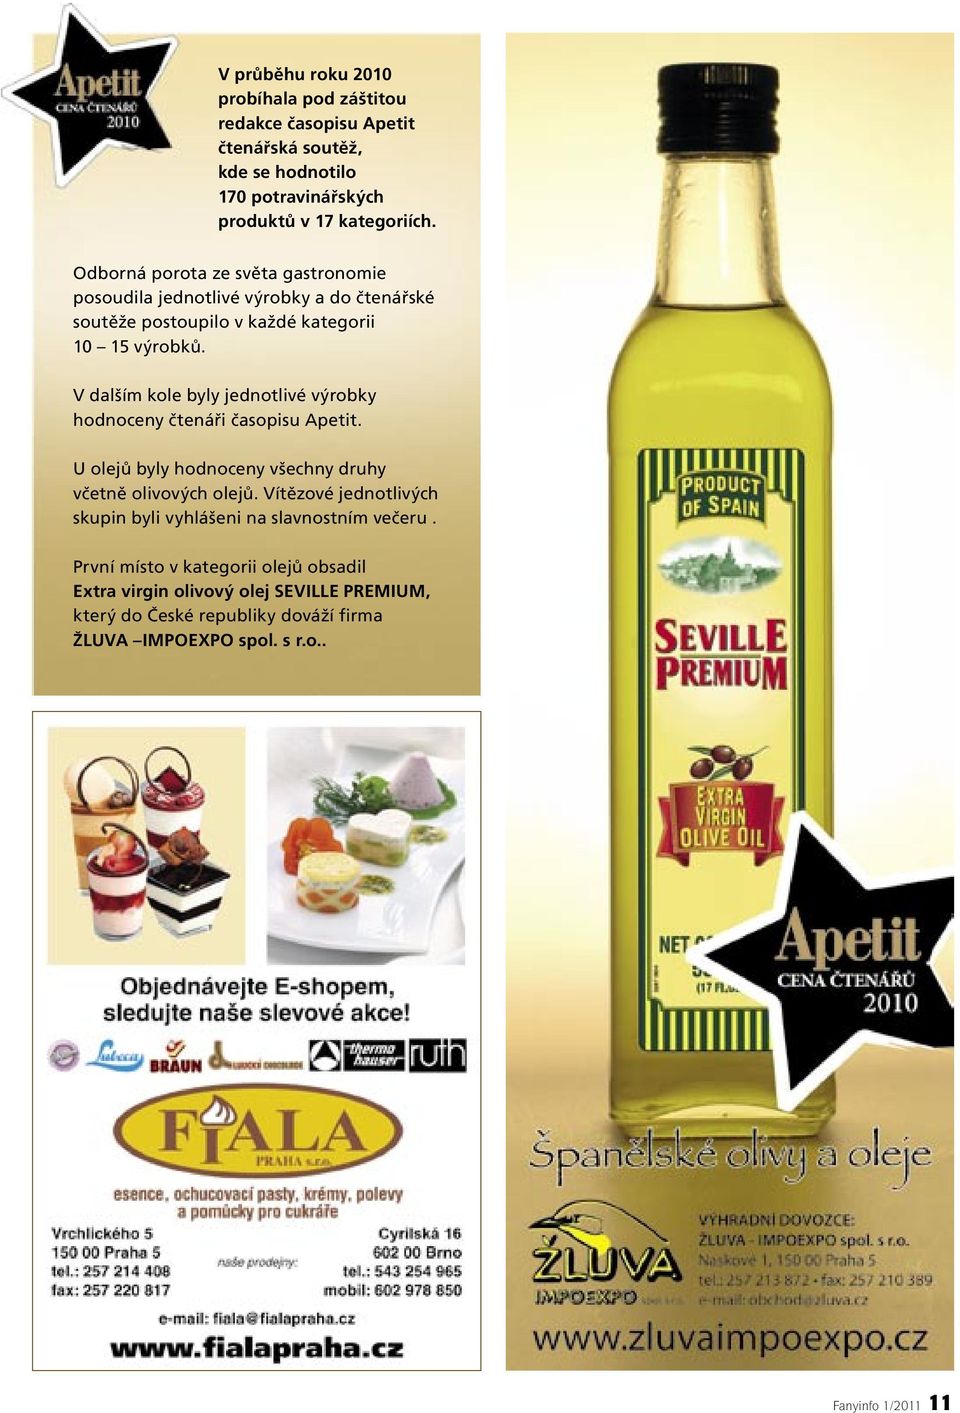 V dalším kole byly jednotlivé výrobky hodnoceny čtenáři časopisu Apetit. U olejů byly hodnoceny všechny druhy včetně olivových olejů.